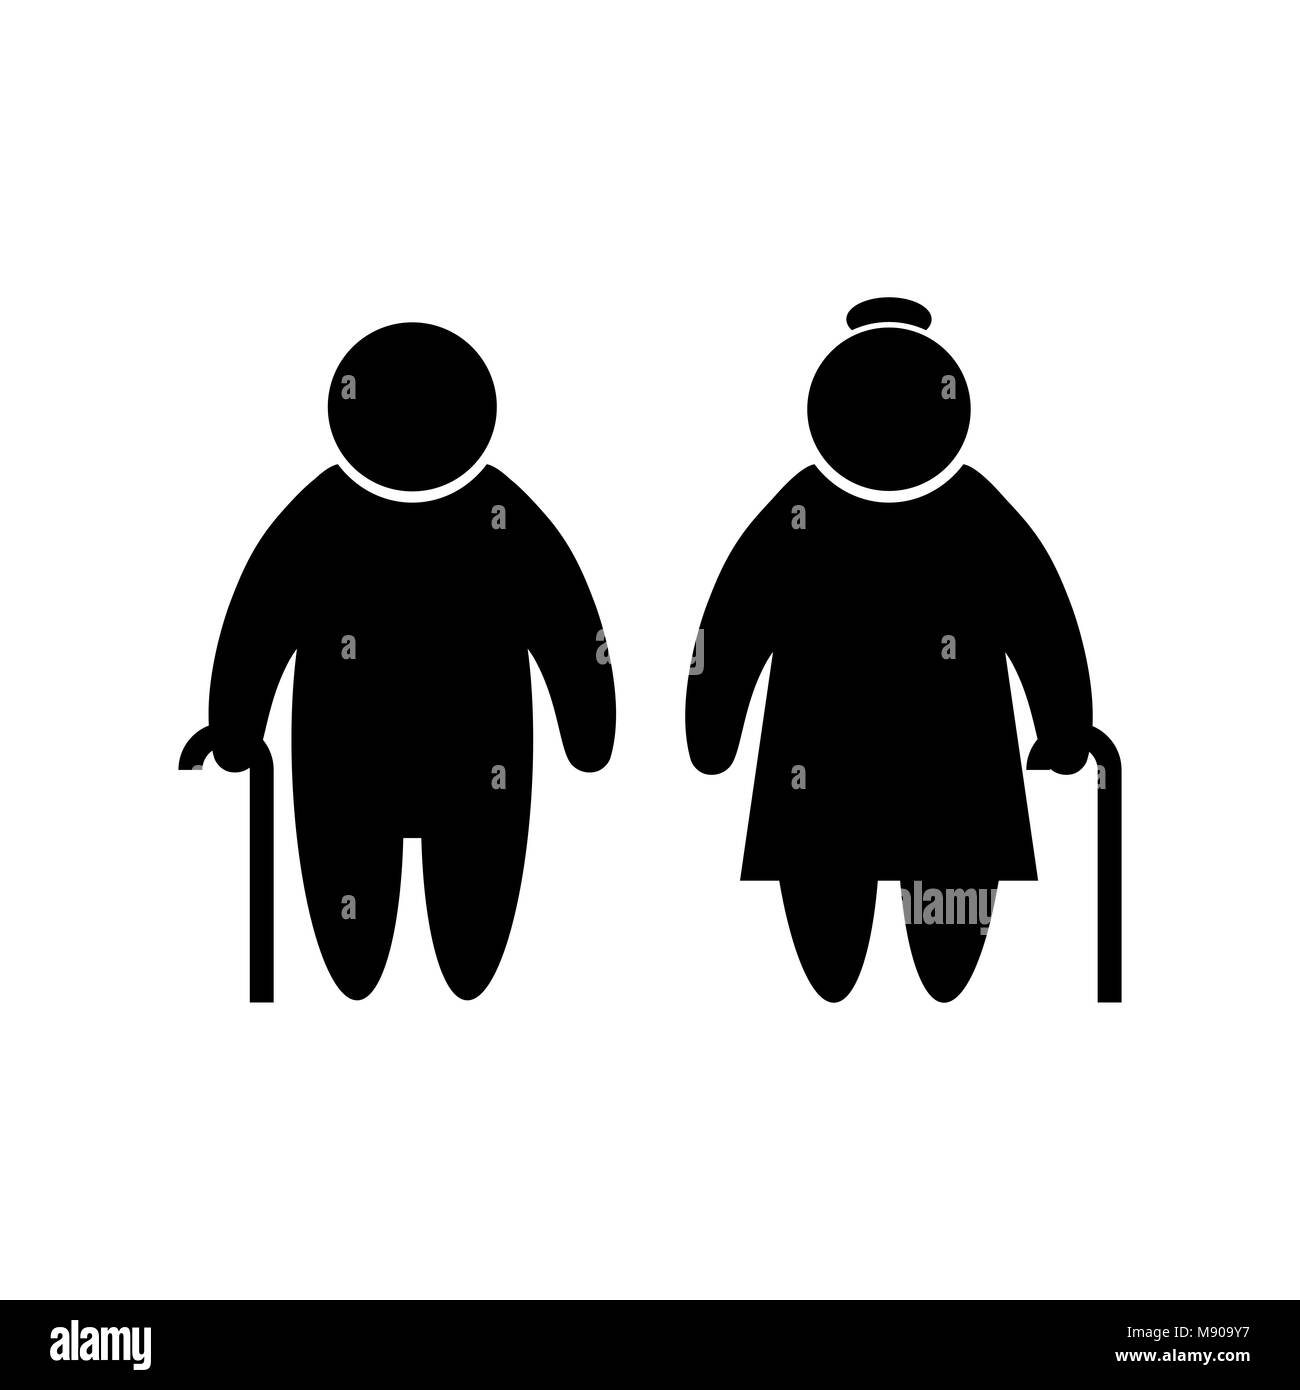 Ältere Menschen Symbol im flachen Stil alte Männer simbol in schwarzen alten Mann und Frau Piktogramm auf weißem Hintergrund. Einfache abstrakte Symbol Vektor illustra Stock Vektor